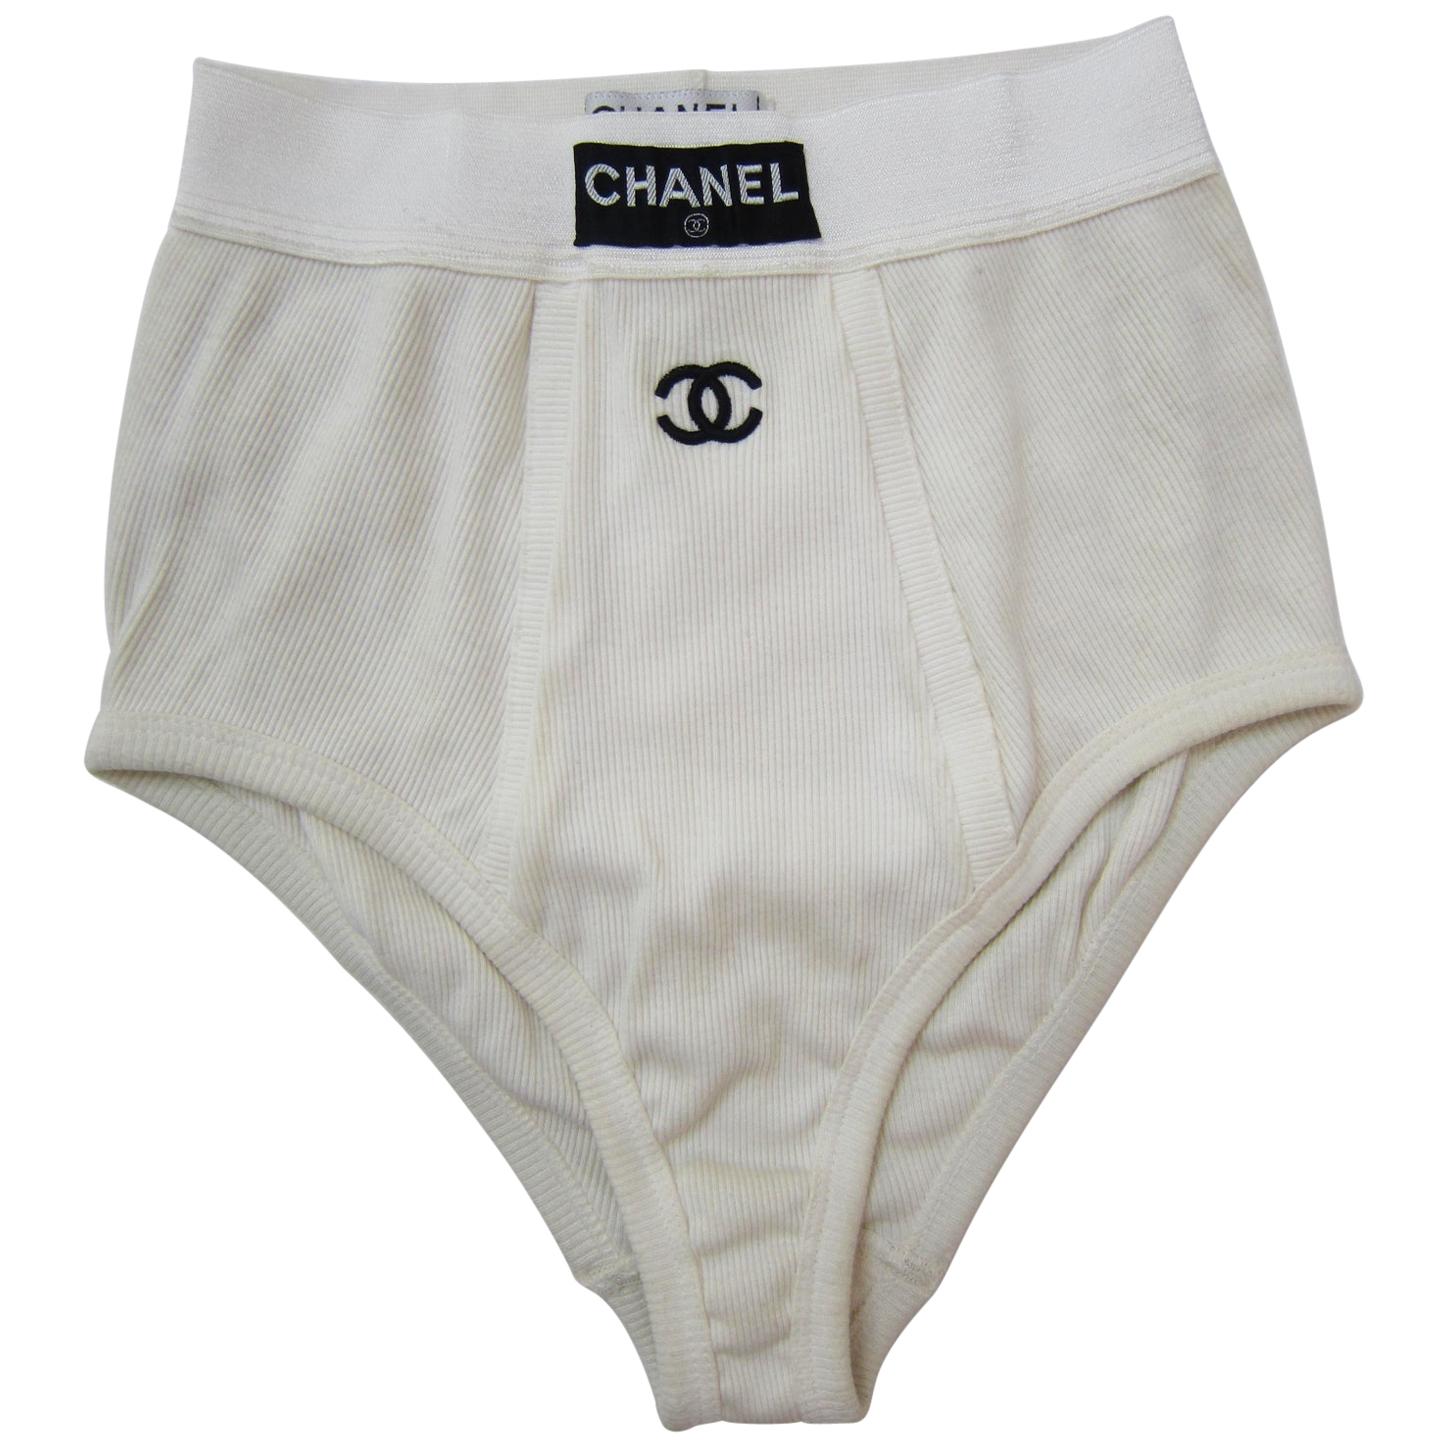 Chanel mens underwear